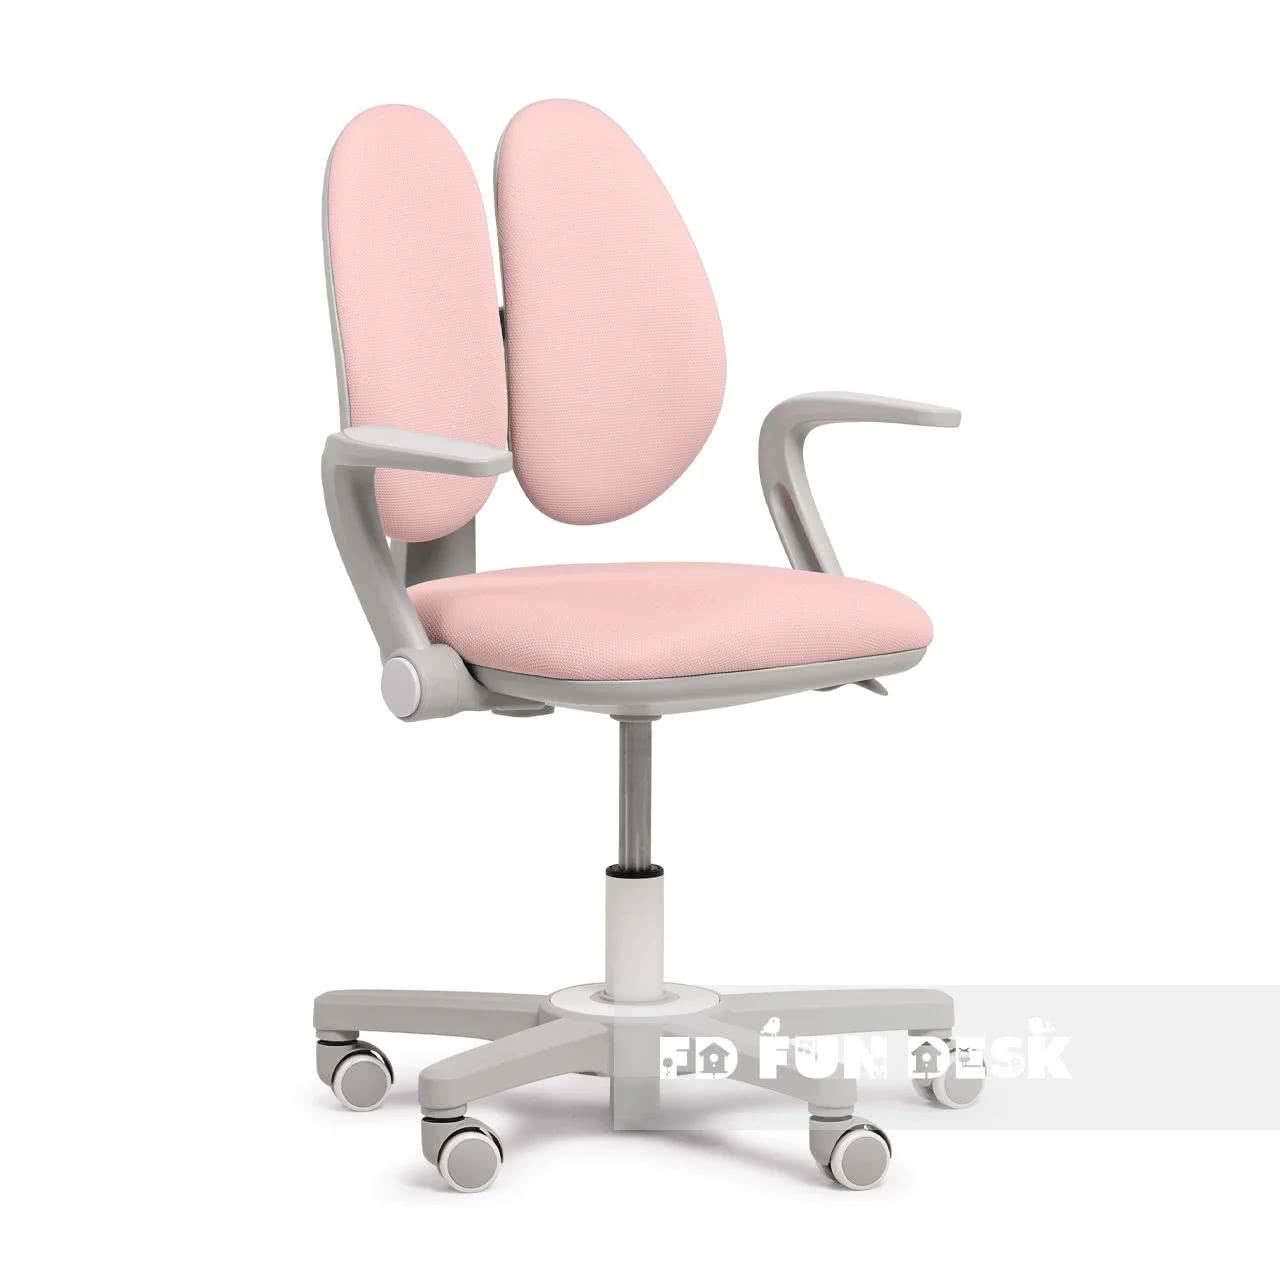 Купить Кресло детское FunDesk Mente, Pink Pink недорого в интернет-магазине